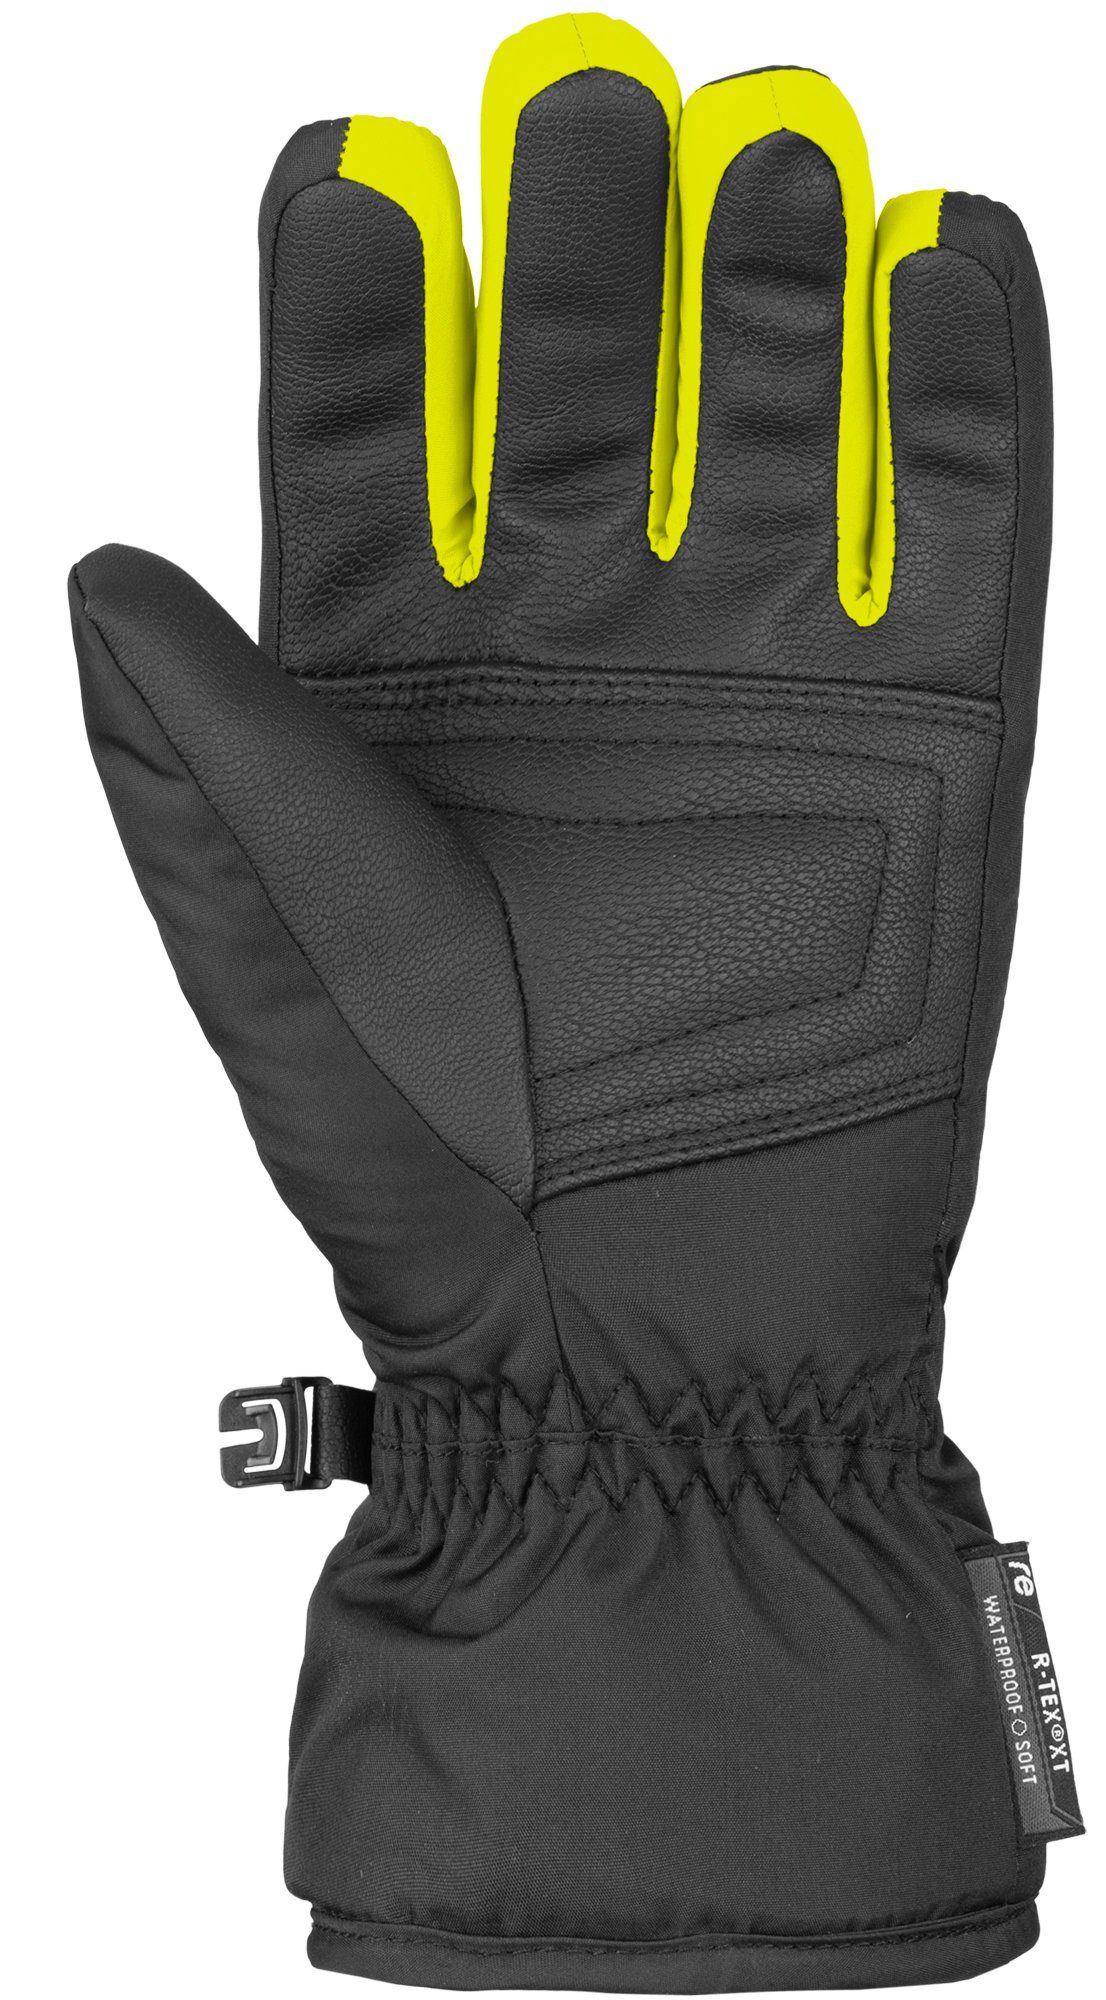 XT gelb-schwarz atmungsaktiver Funktion Bennet Junior Skihandschuhe R-TEX Reusch mit